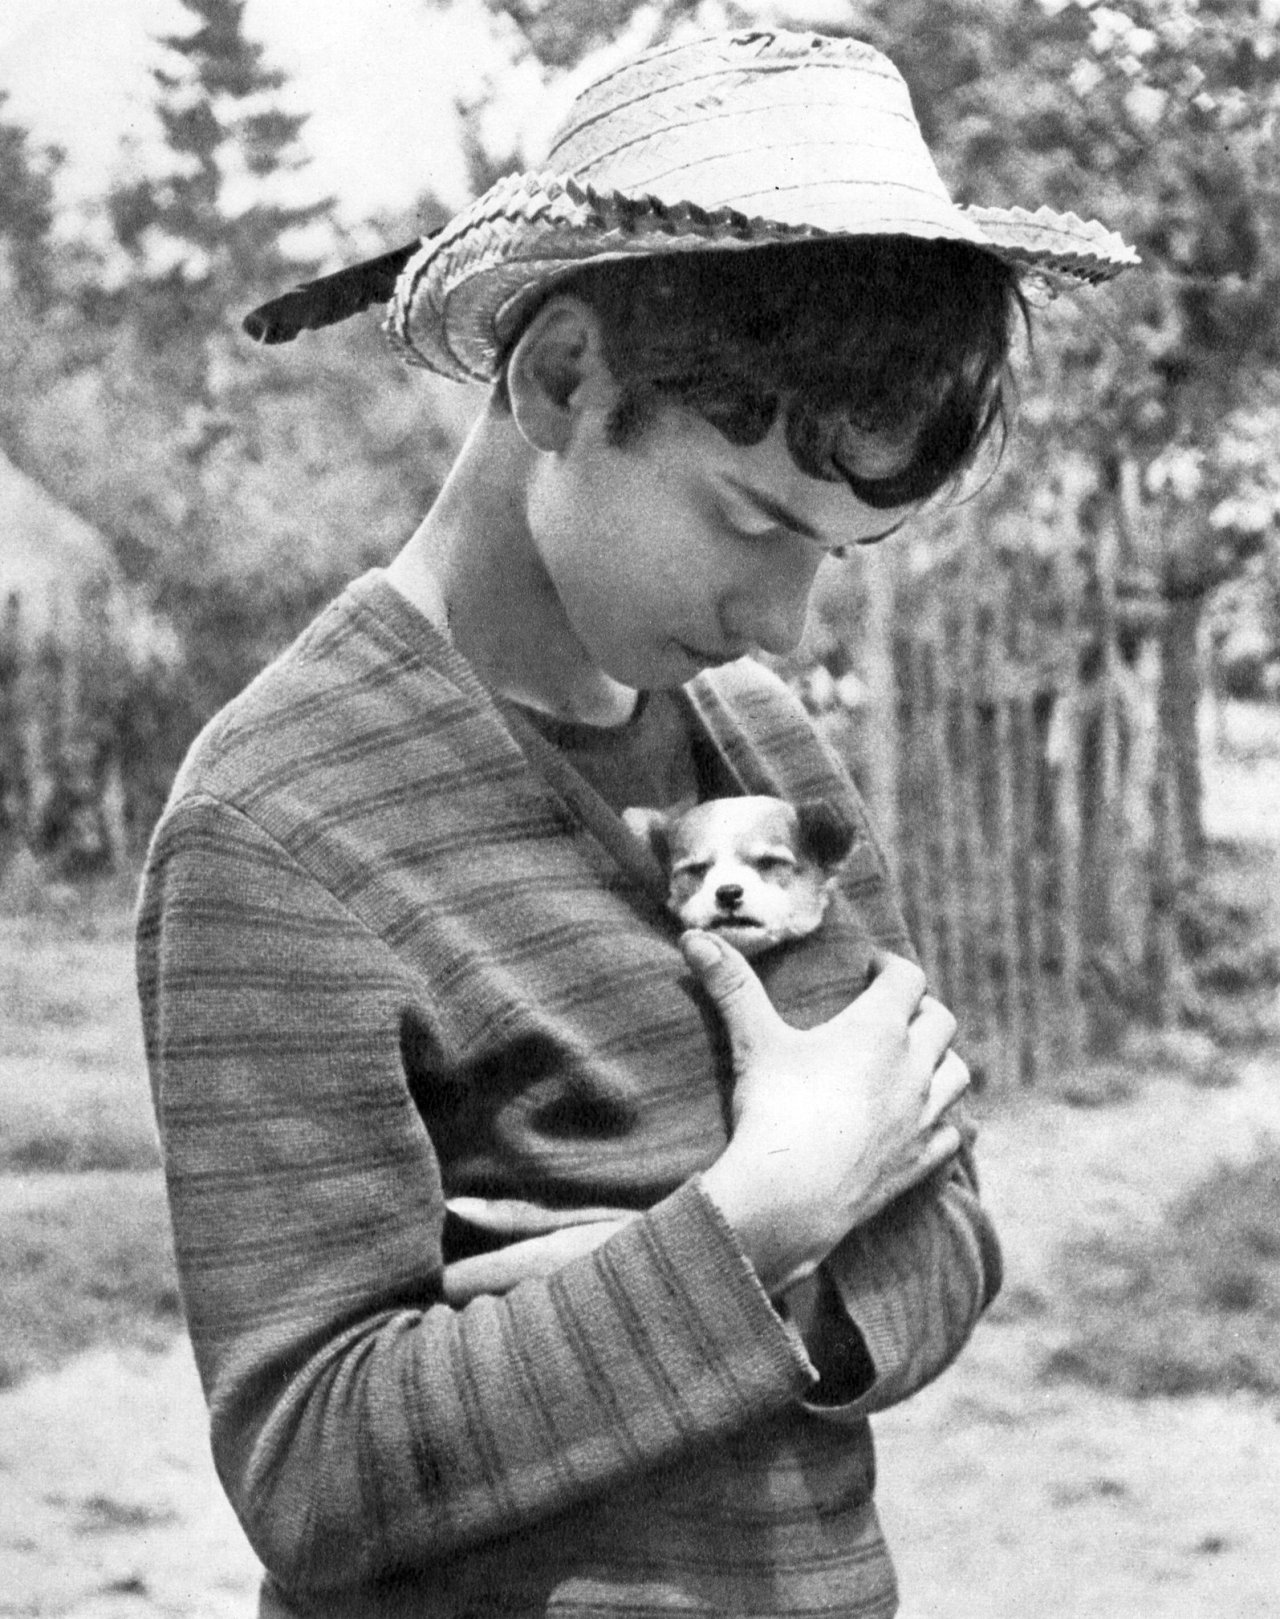 43nils:
“ Andrzej Bogusz
A boy with a puppy.1968
”